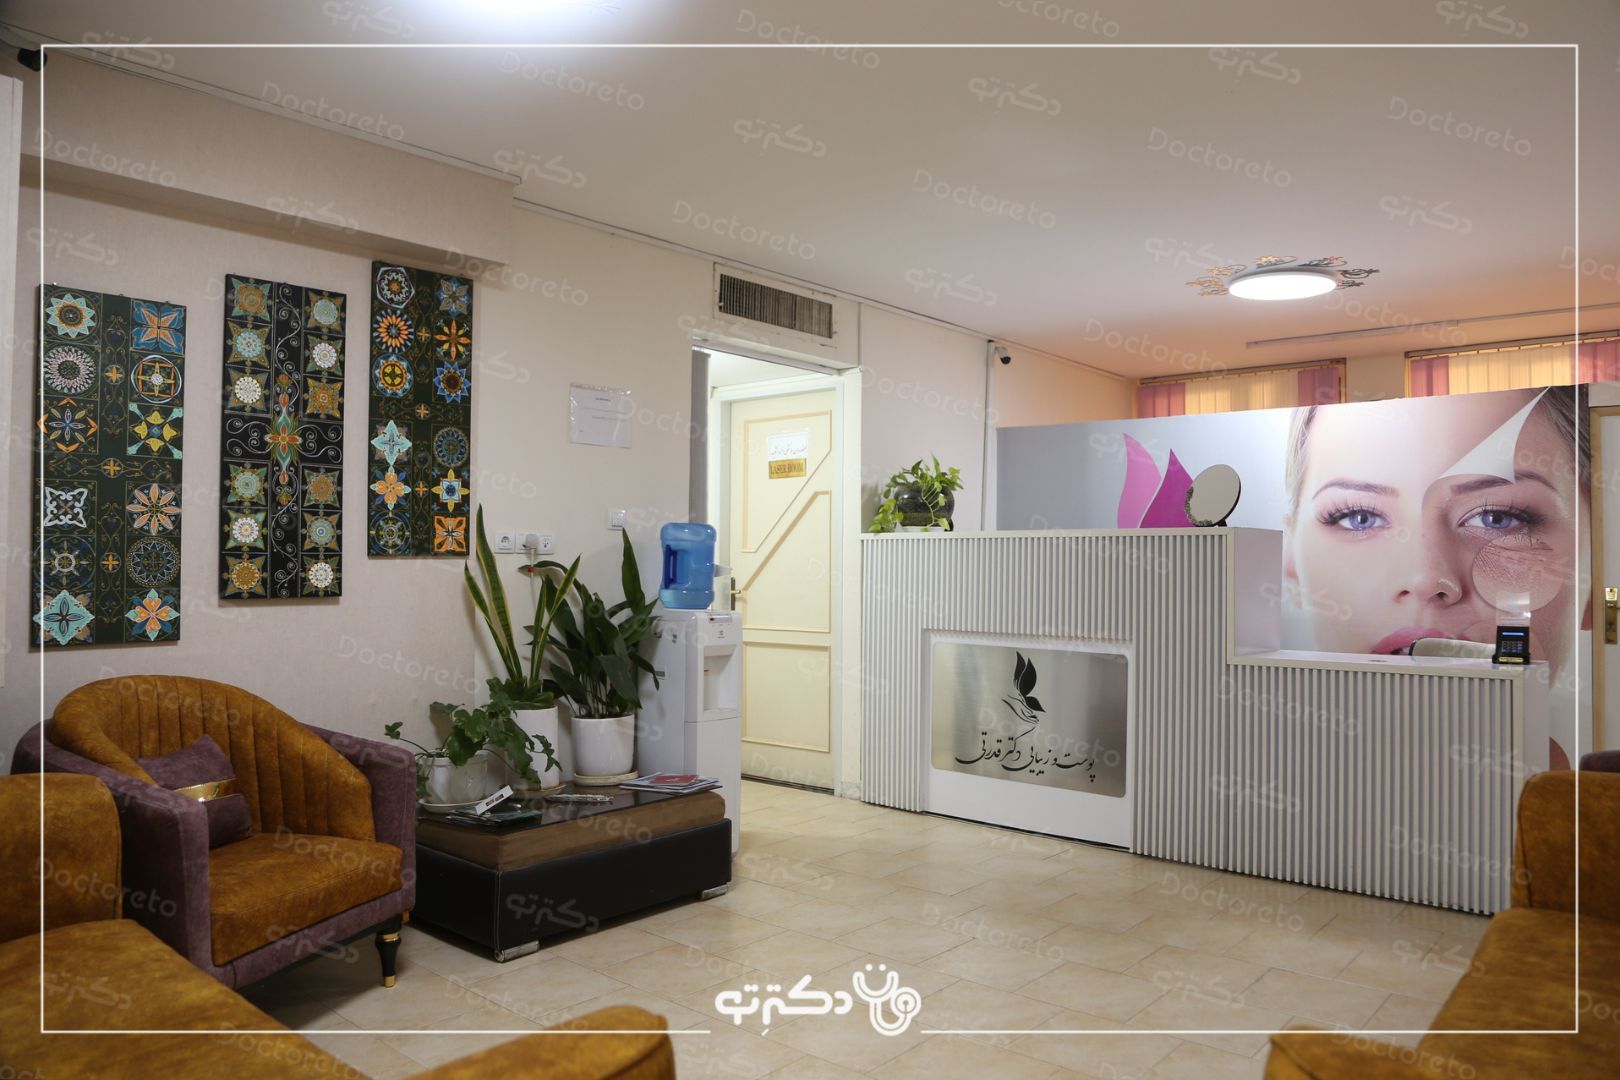 مزوتراپی ابرو با برند ام سی کازمتیک یا فیوژن(1جلسه) دکتر فاطمه قدرتی در شیراز 6